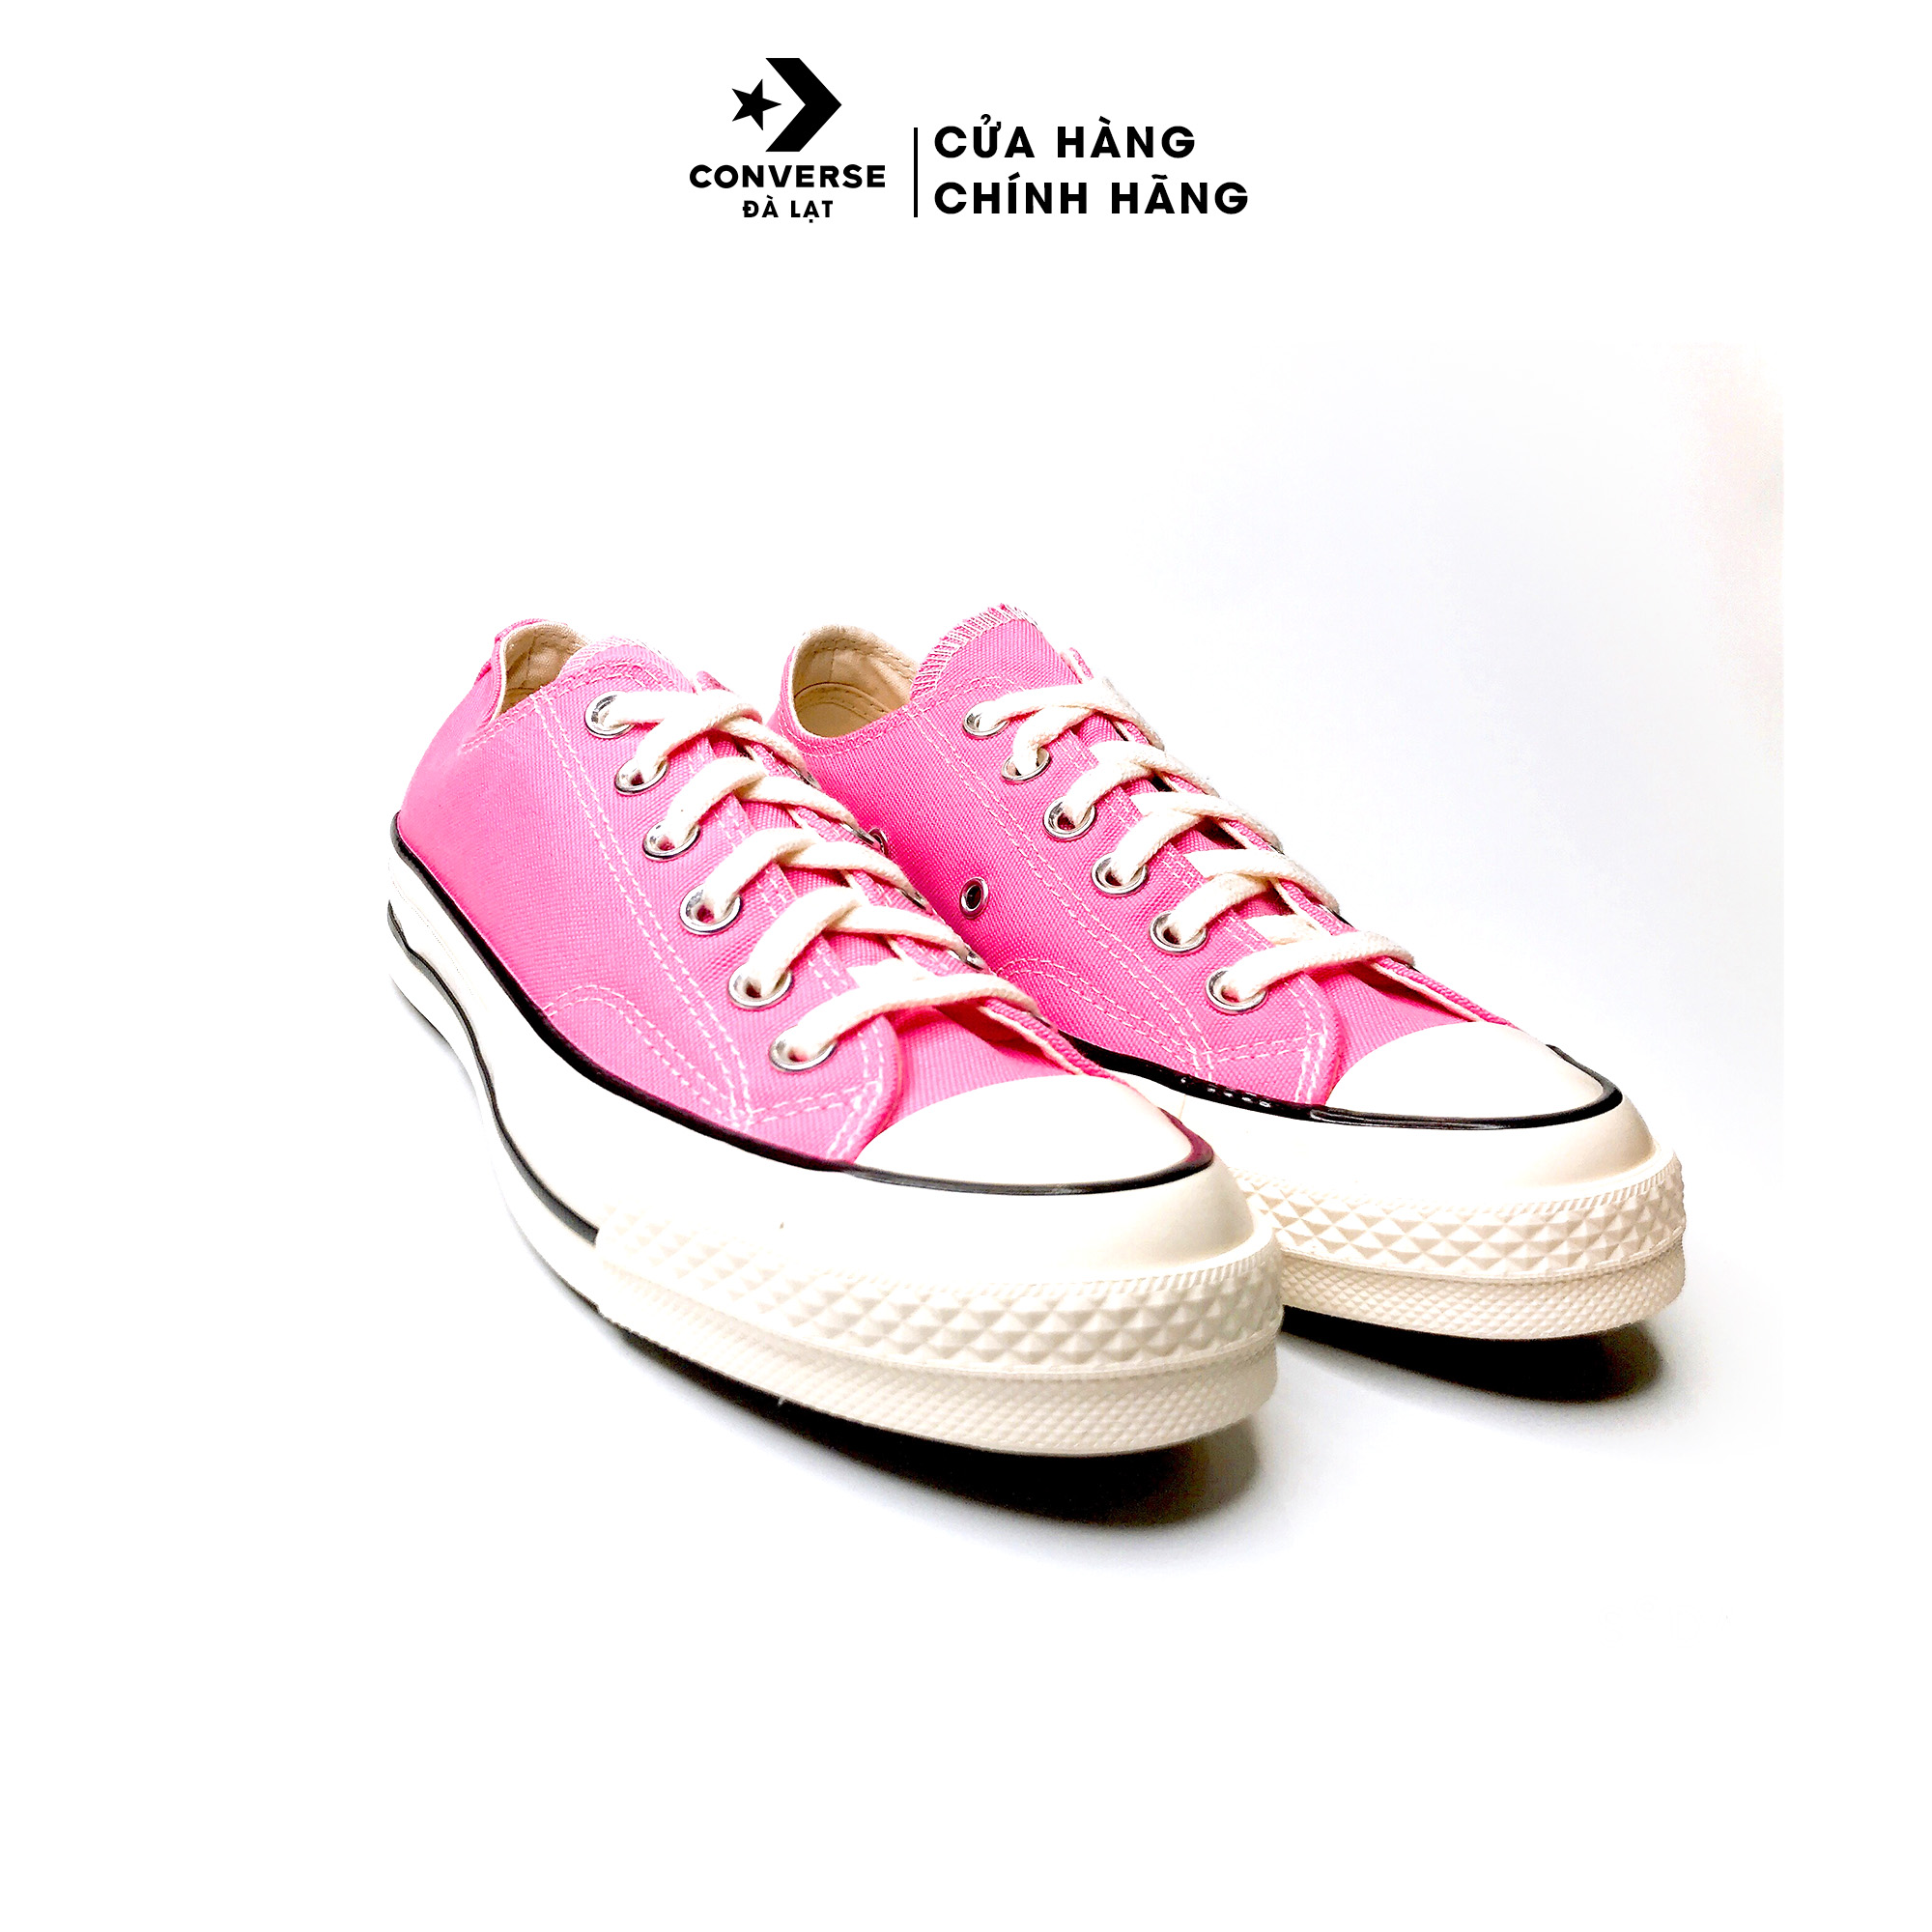 Giày Converse màu hồng Chuck 70 Recycled Rpet Canvas Sneakers thời trang năng động -172681C